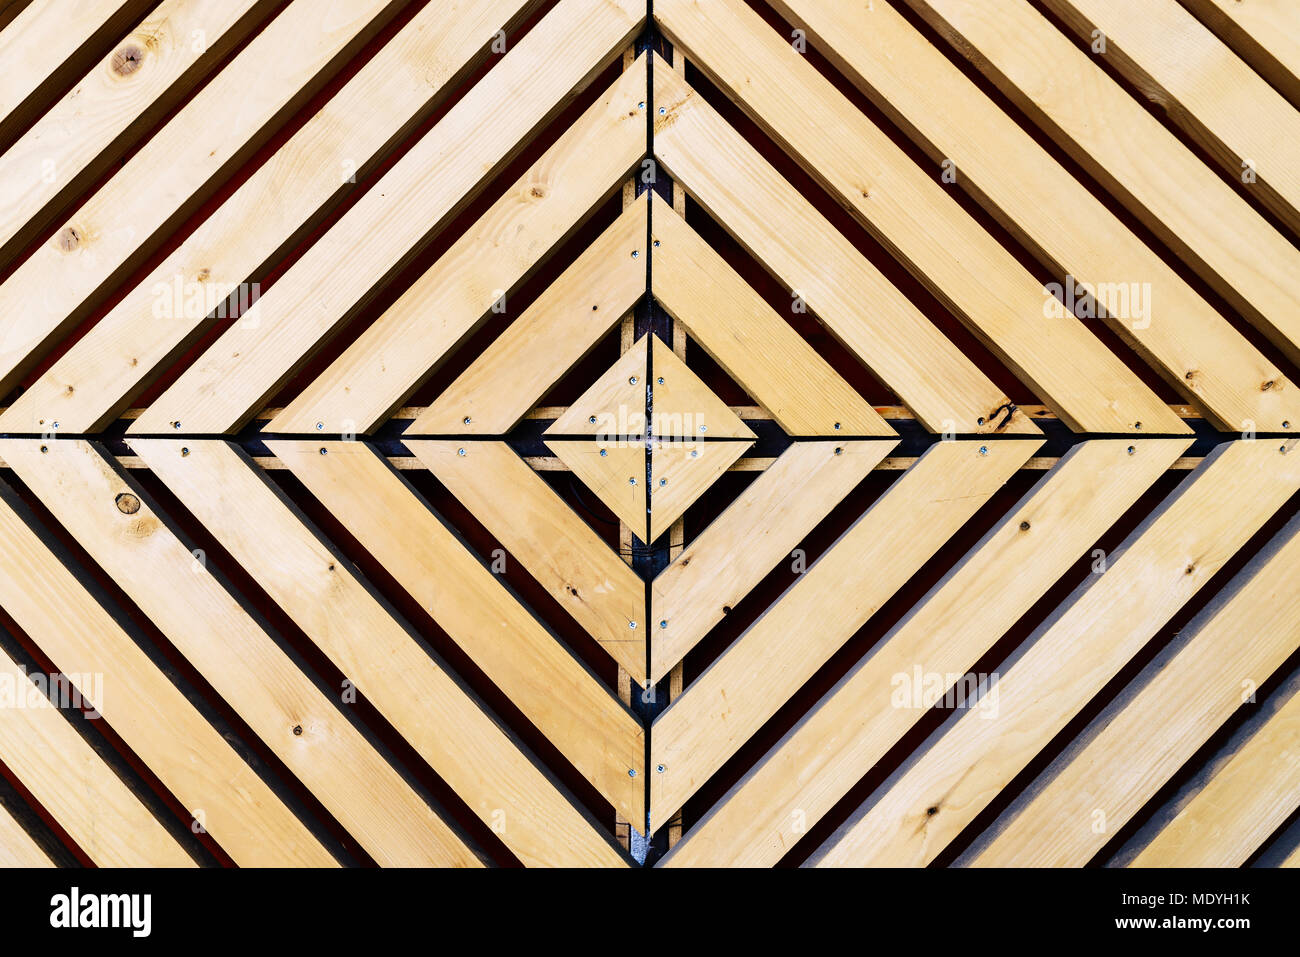 Motif de fond diamond symétriques avec du bois naturel en carrés ou rectangles concentriques (vue de dessus Banque D'Images